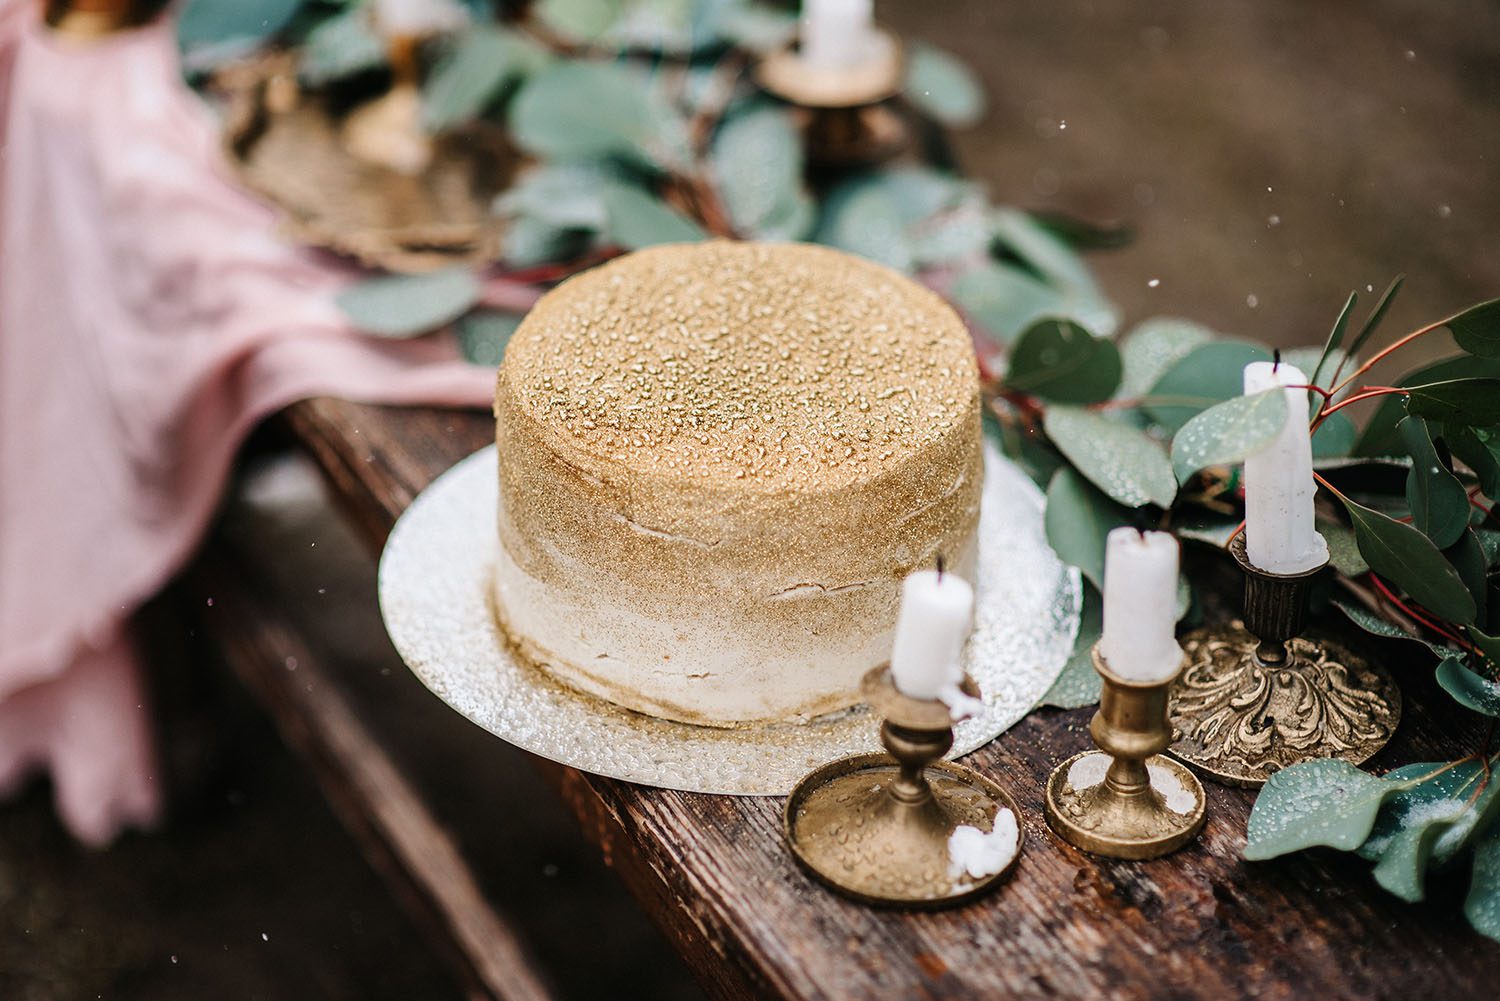 wedding decor with a golden cake